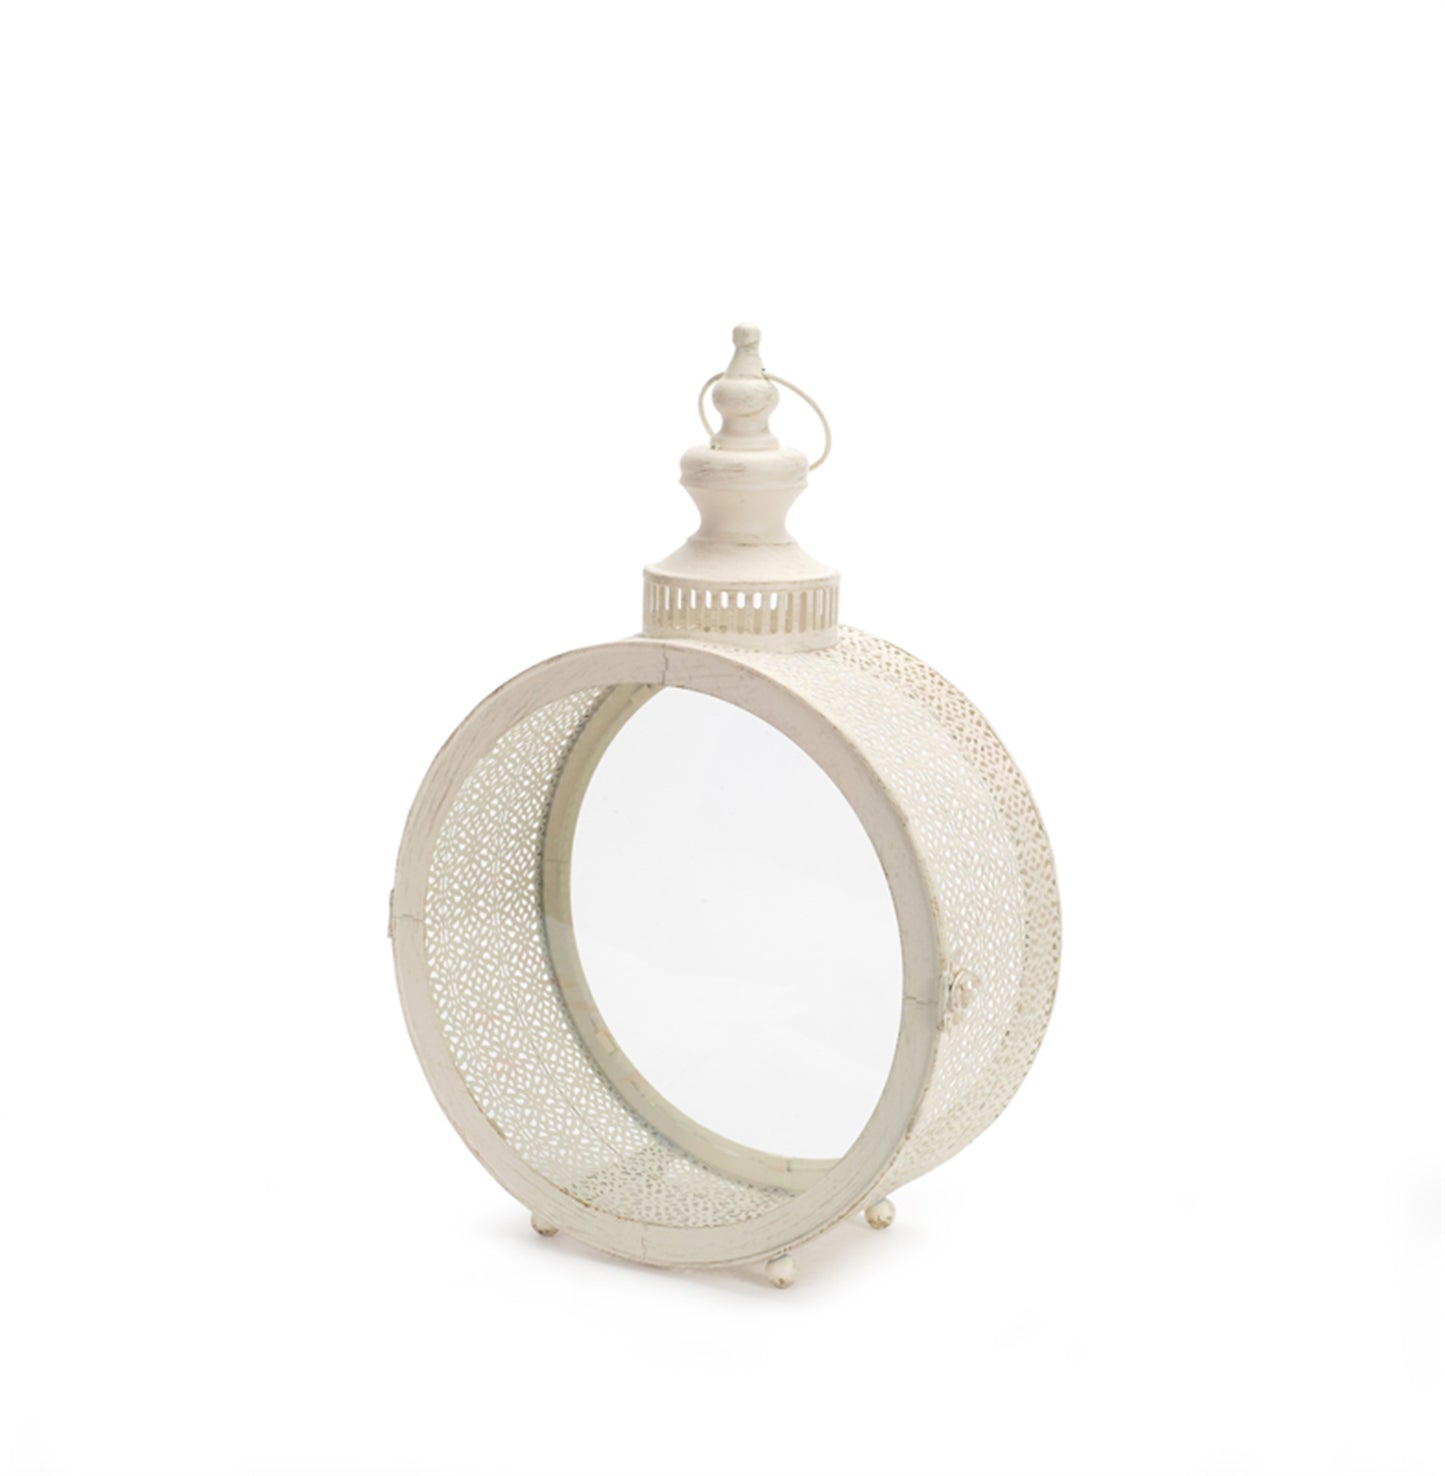 Ivory Ornate Metal Circle Lantern 17.5"D